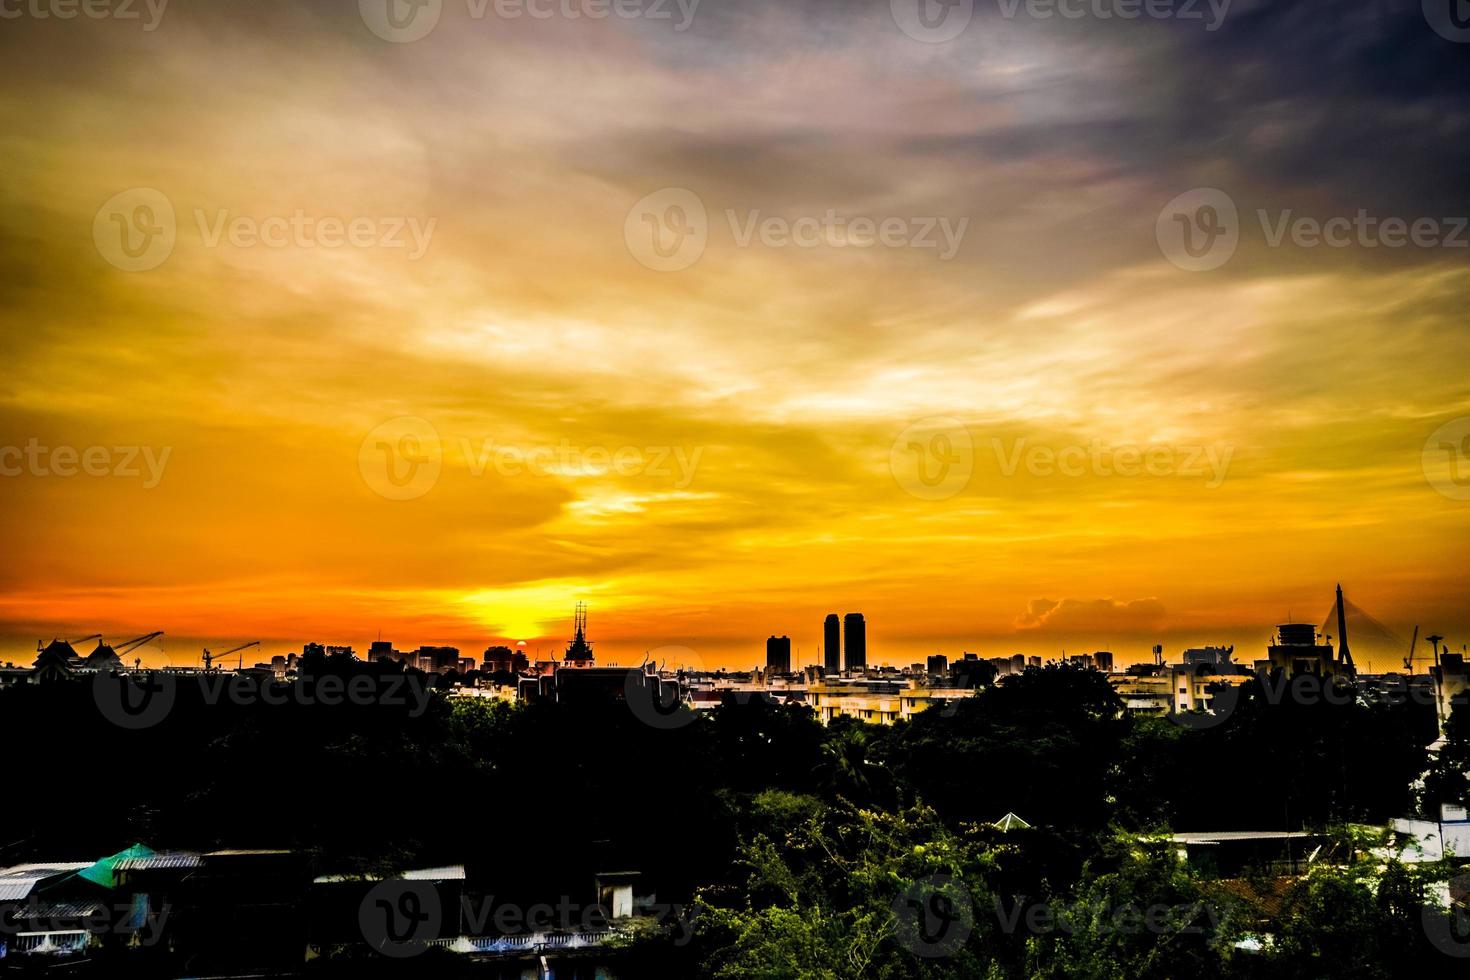 Vue d'ensemble du paysage urbain avec un ciel ouvert au crépuscule. ville de bangkok, thaïlande. photo